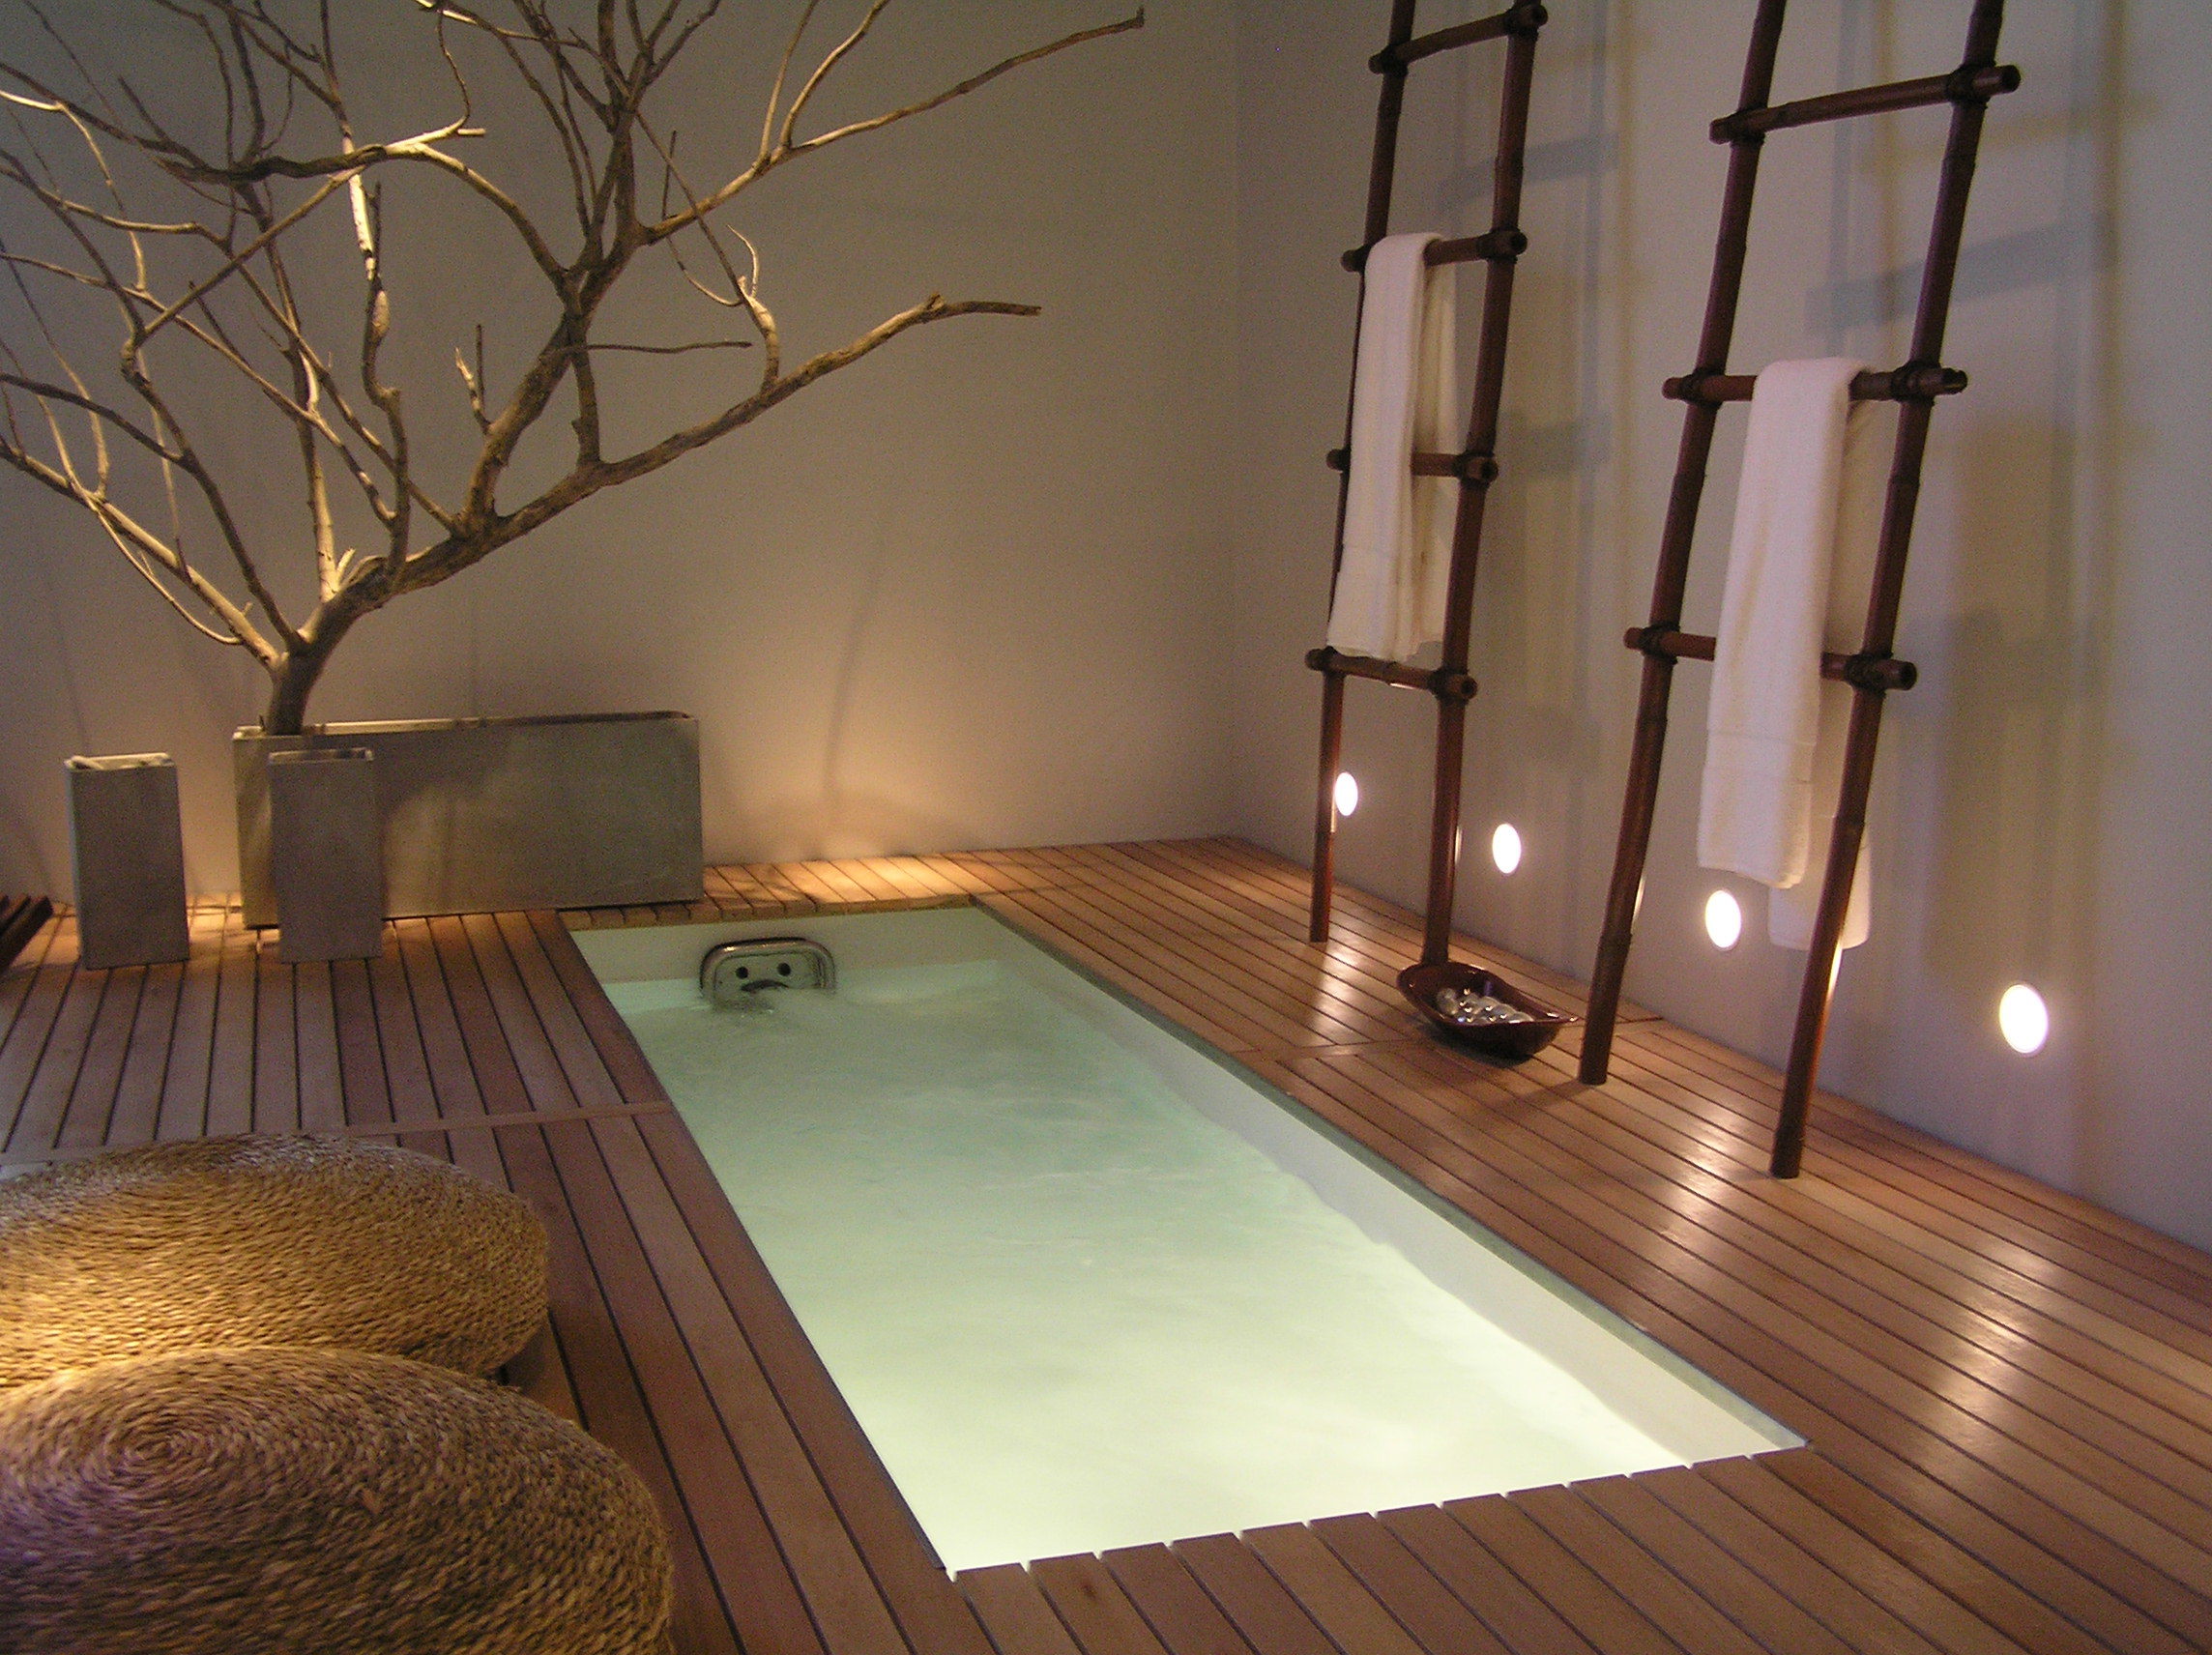 Место релакса. Необычный дизайн комнаты. Ванна в японском стиле. Подсветка подиума в ванной. Комната релаксации.